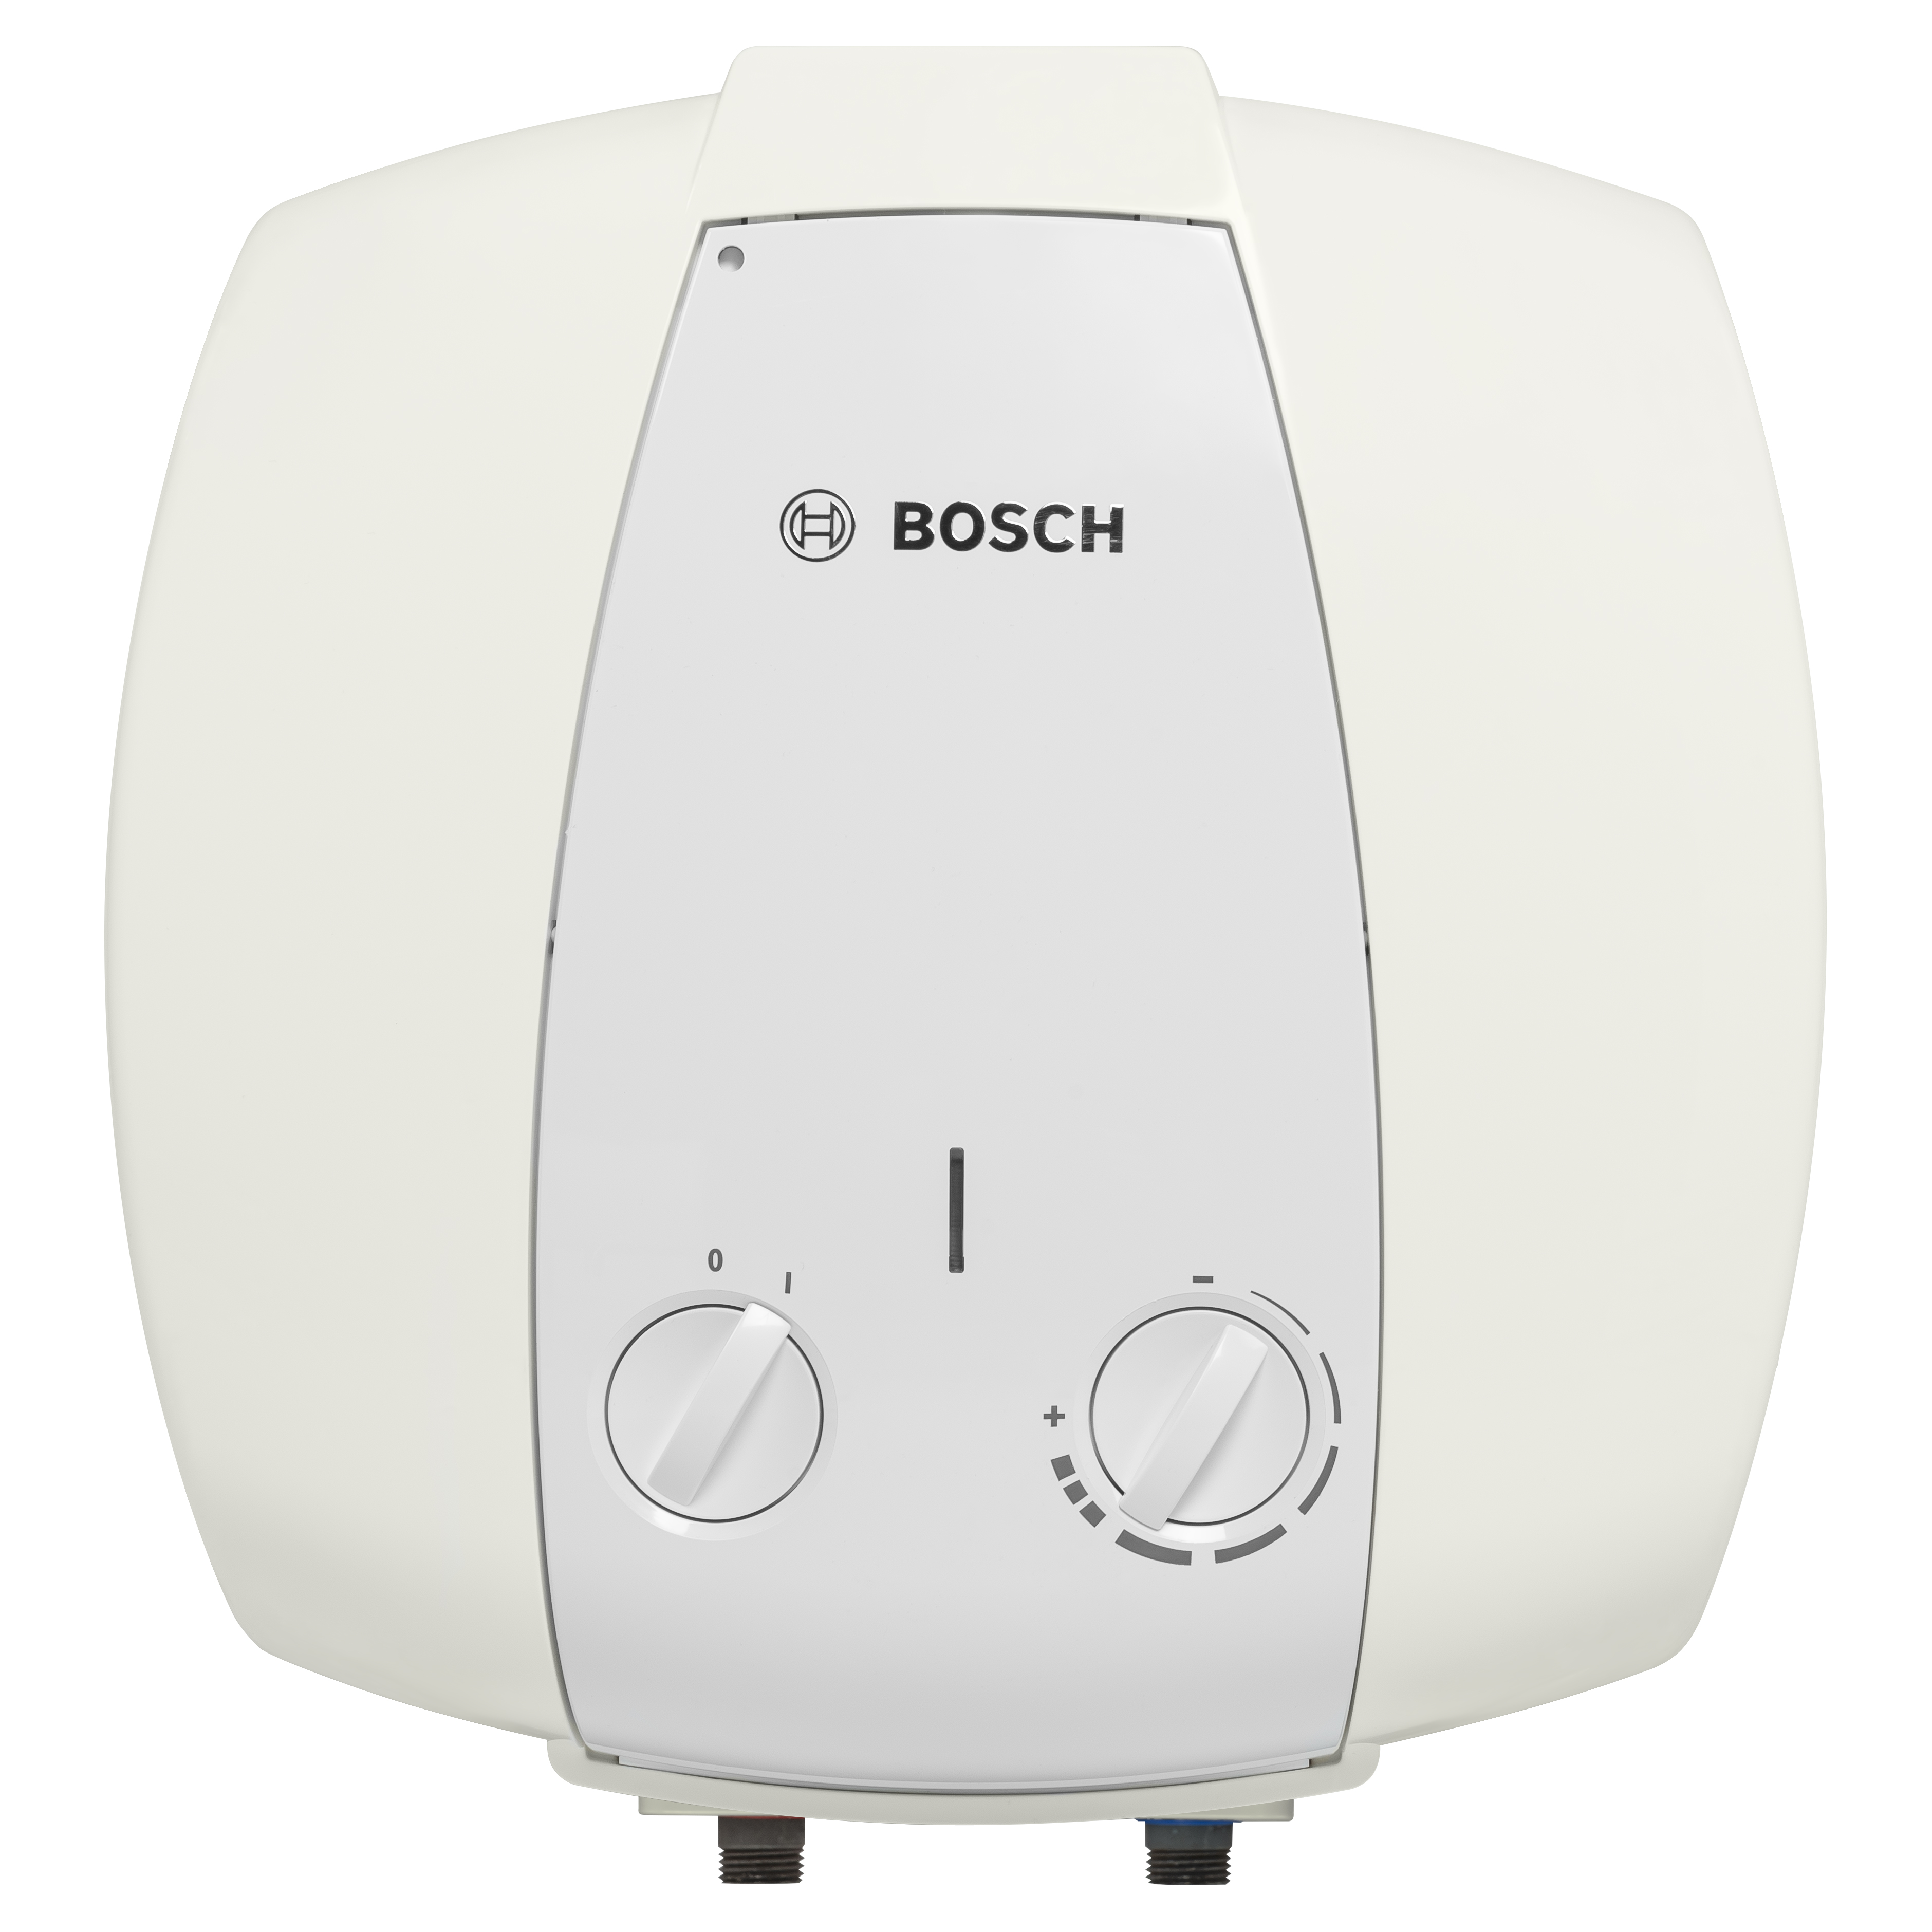 Бойлер на 1500 Вт / 1,5 кВт Bosch TR 2000 T 15 B (7736504746)